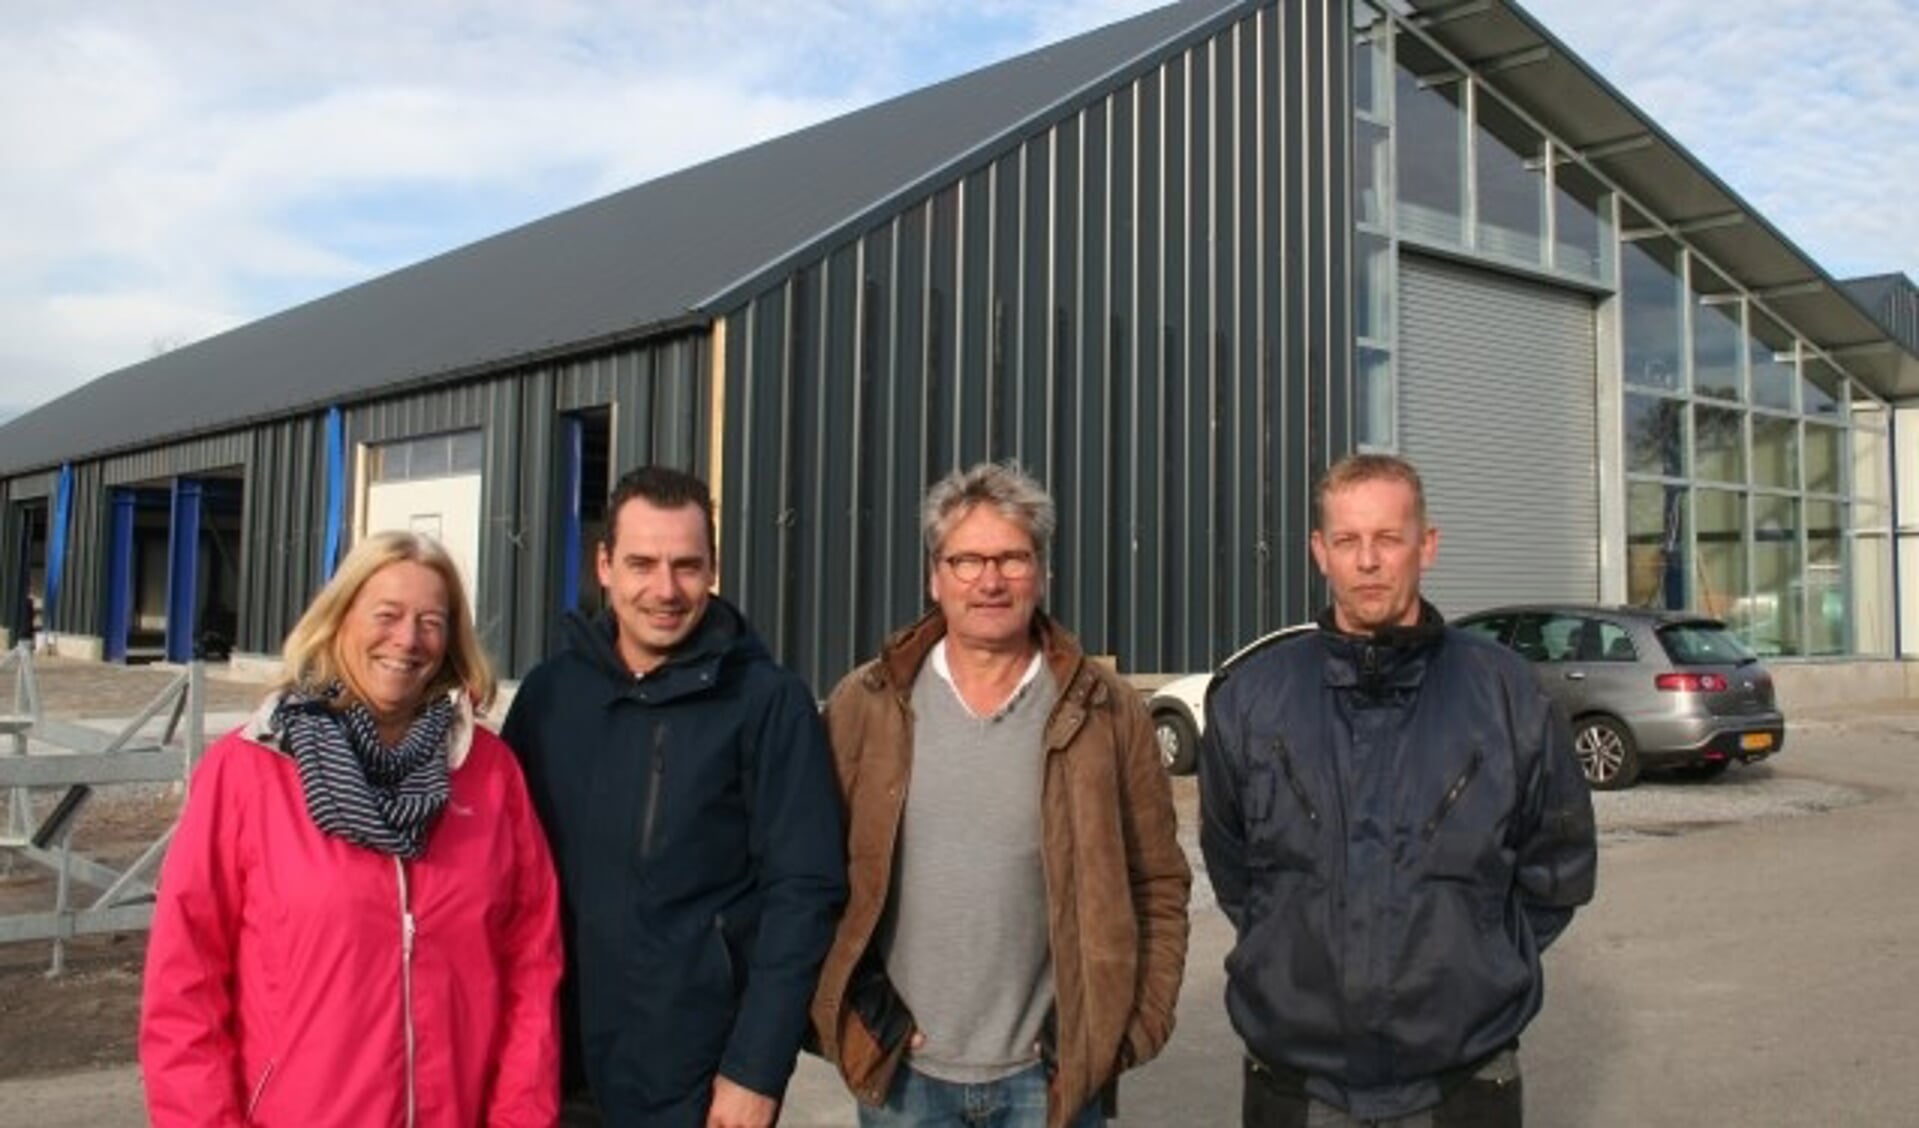 Mieke Kromwijk, Daniël Dekker, Jan Kromwijk en Jan-Erik Reuvekamp voor de herbouwde botenloodsen van de jachthaven. (Foto: Rinus Verweij)